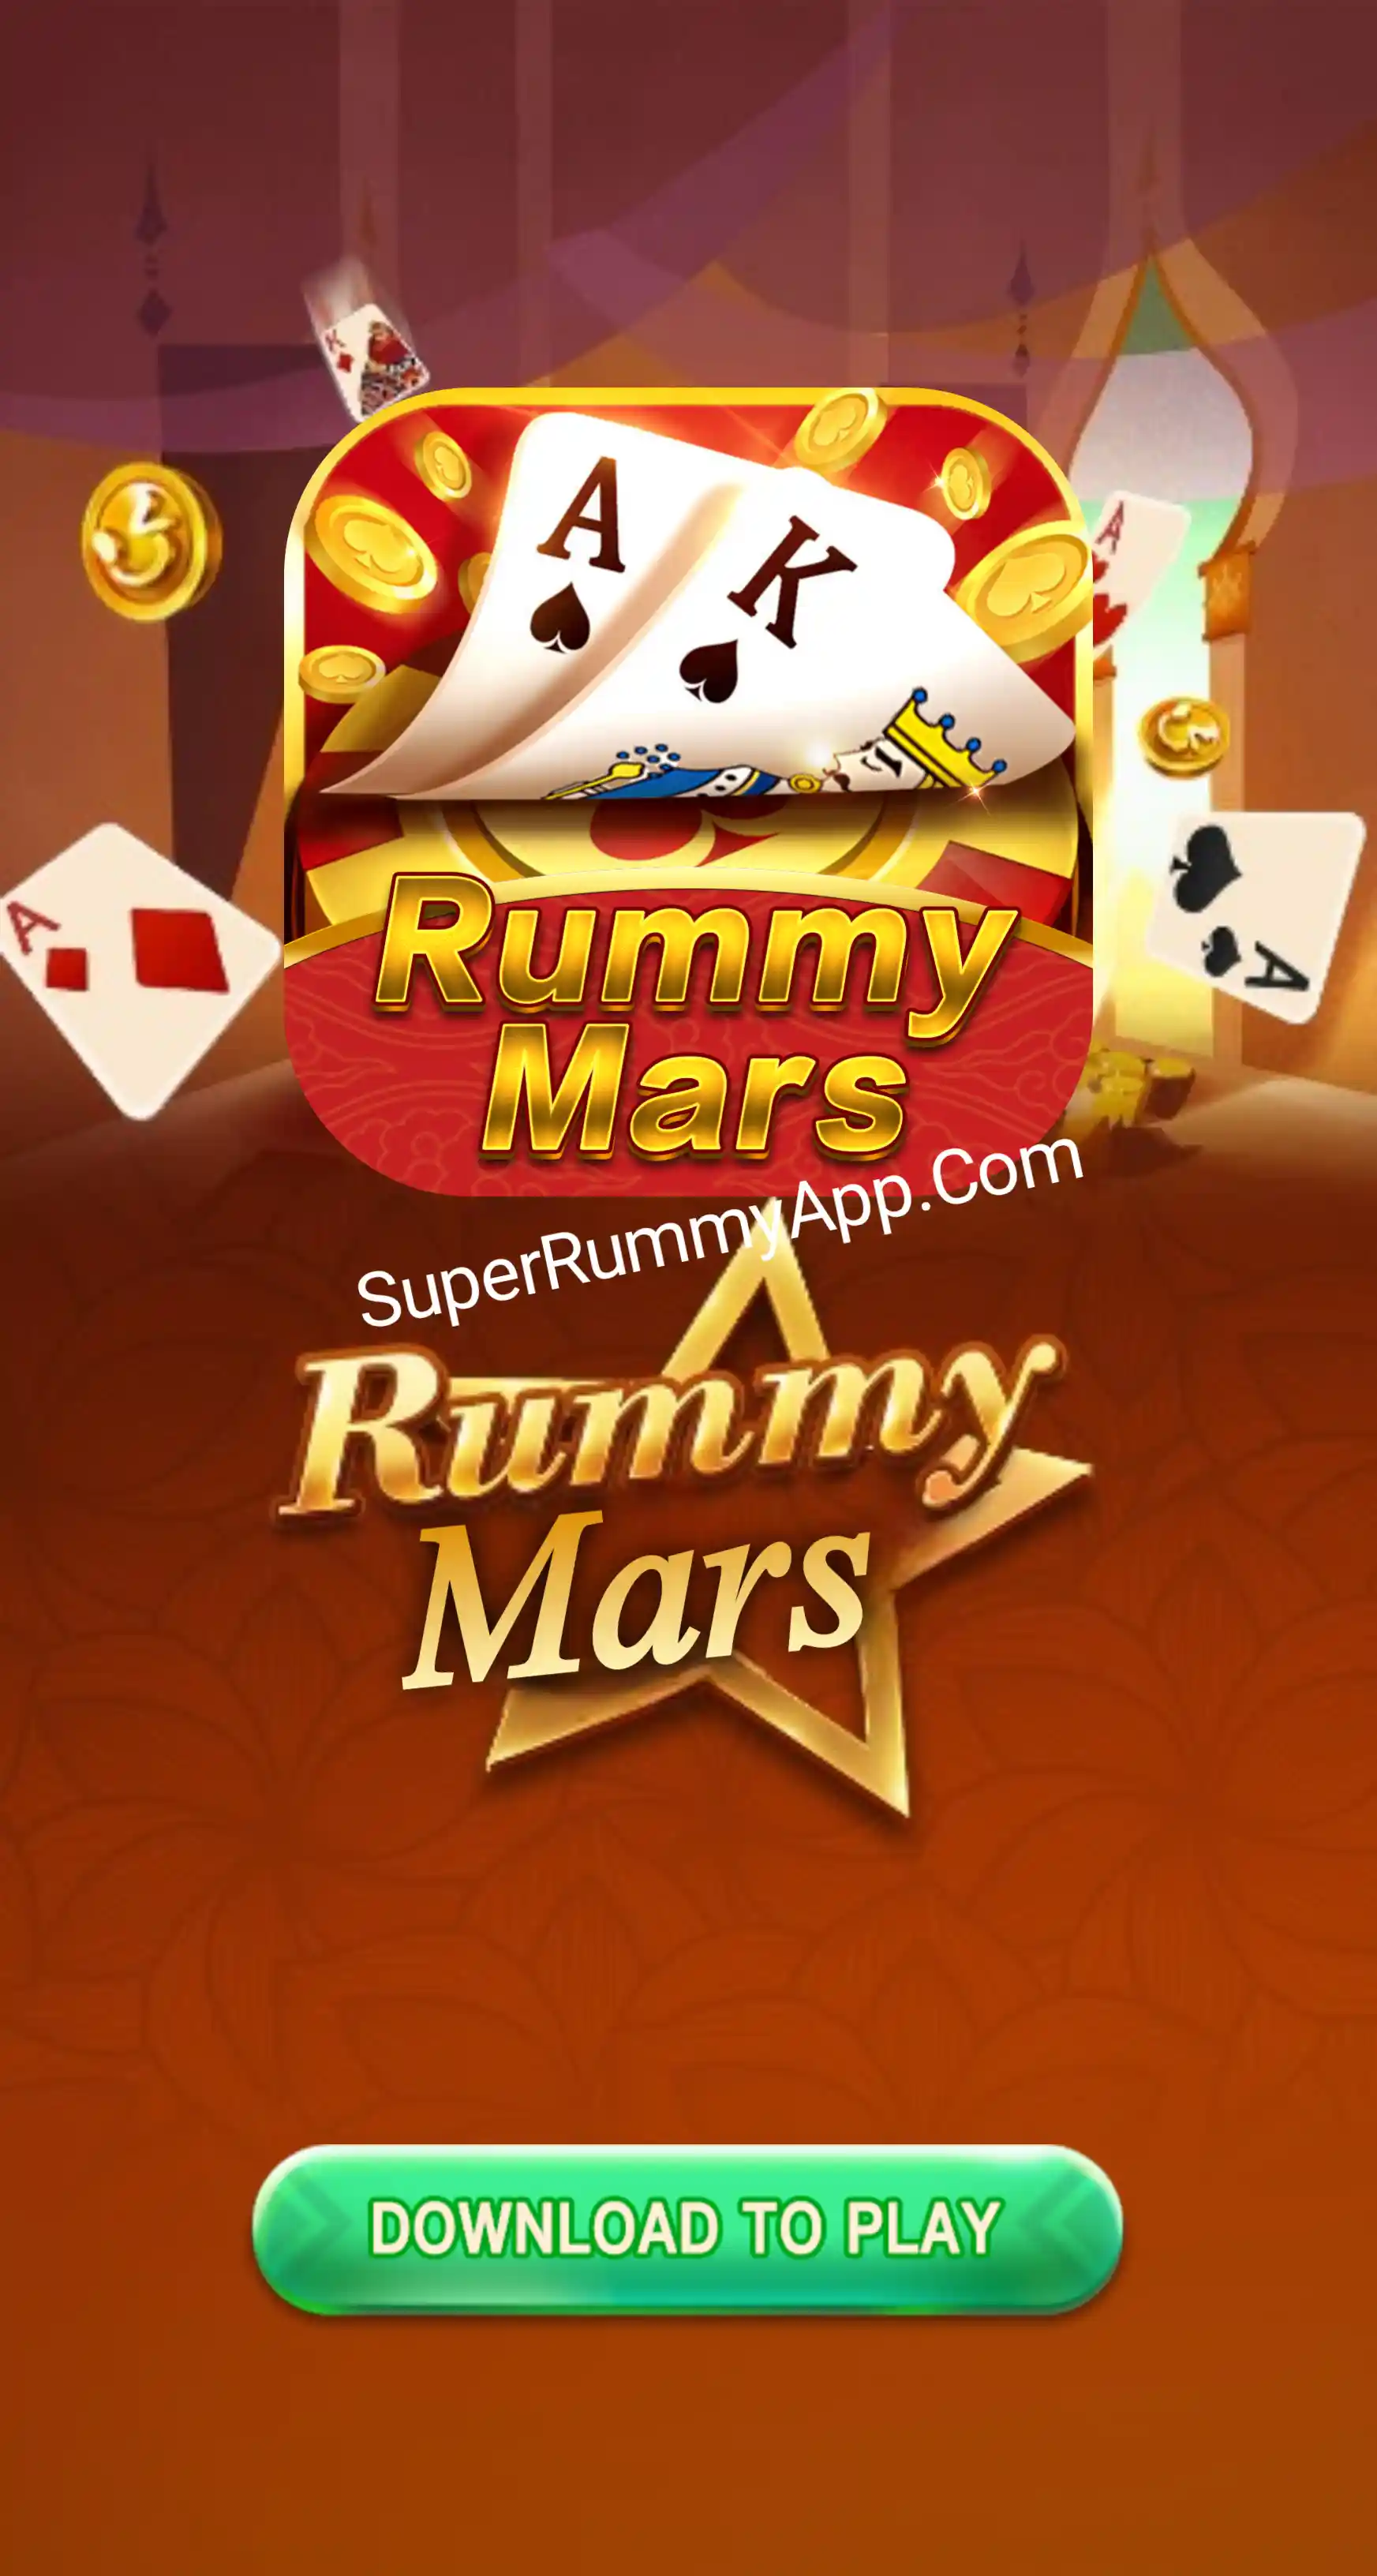 Rummy Mars Apk Download - India Rummy App